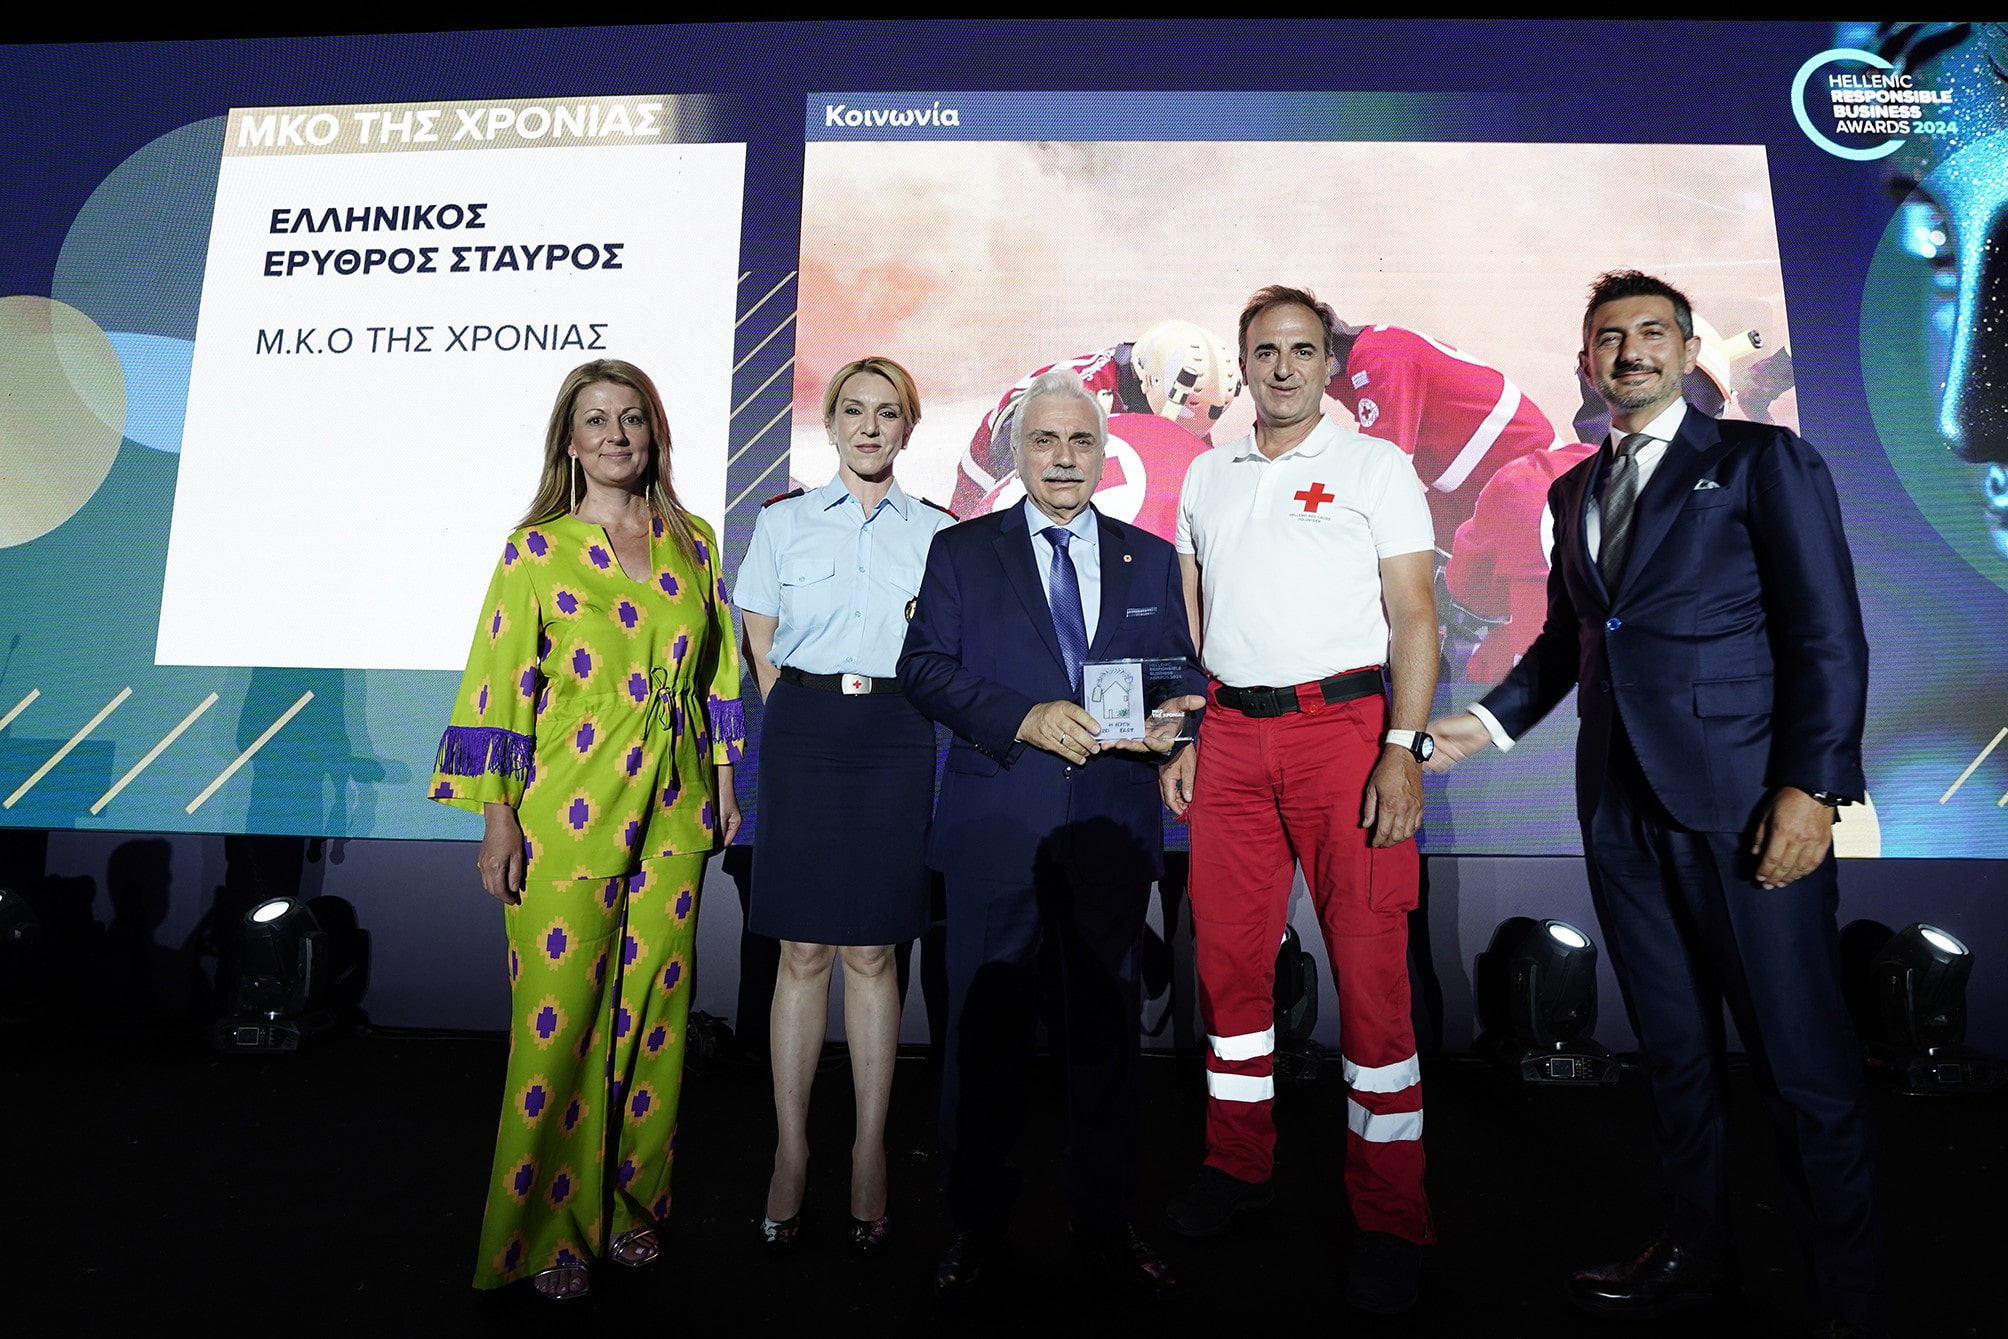 Ο Ελληνικός Ερυθρός Σταυρός ετιμήθη ως η πρώτη Εθελοντική – Ανθρωπιστική Οργάνωση στην Ελλάδα στα Hellenic Responsible Business Awards 2024